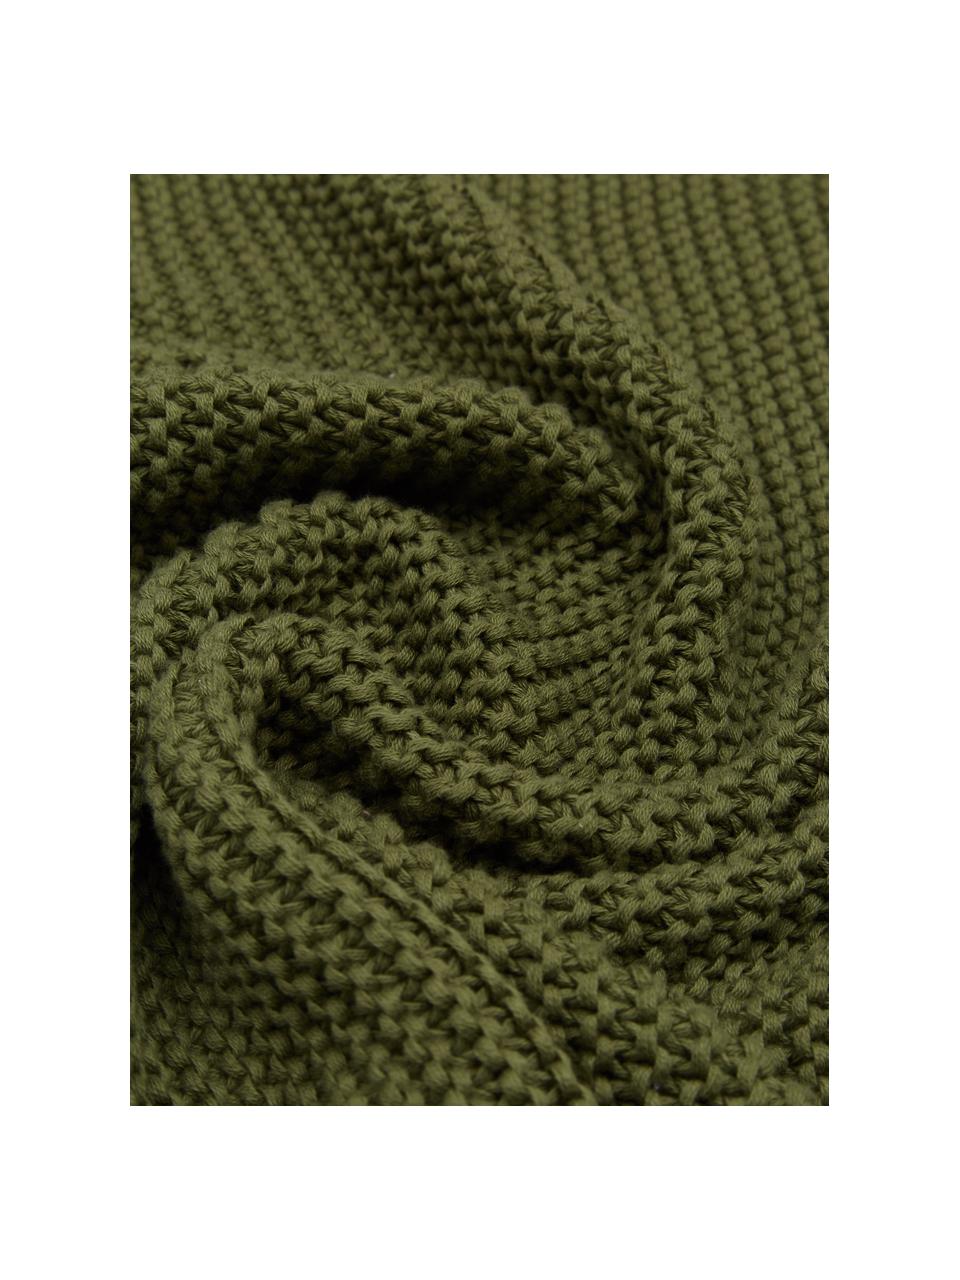 Strickdecke Adalyn aus Bio-Baumwolle in Grün, 100% Bio-Baumwolle, GOTS-zertifiziert, Grün, B 150 x L 200 cm